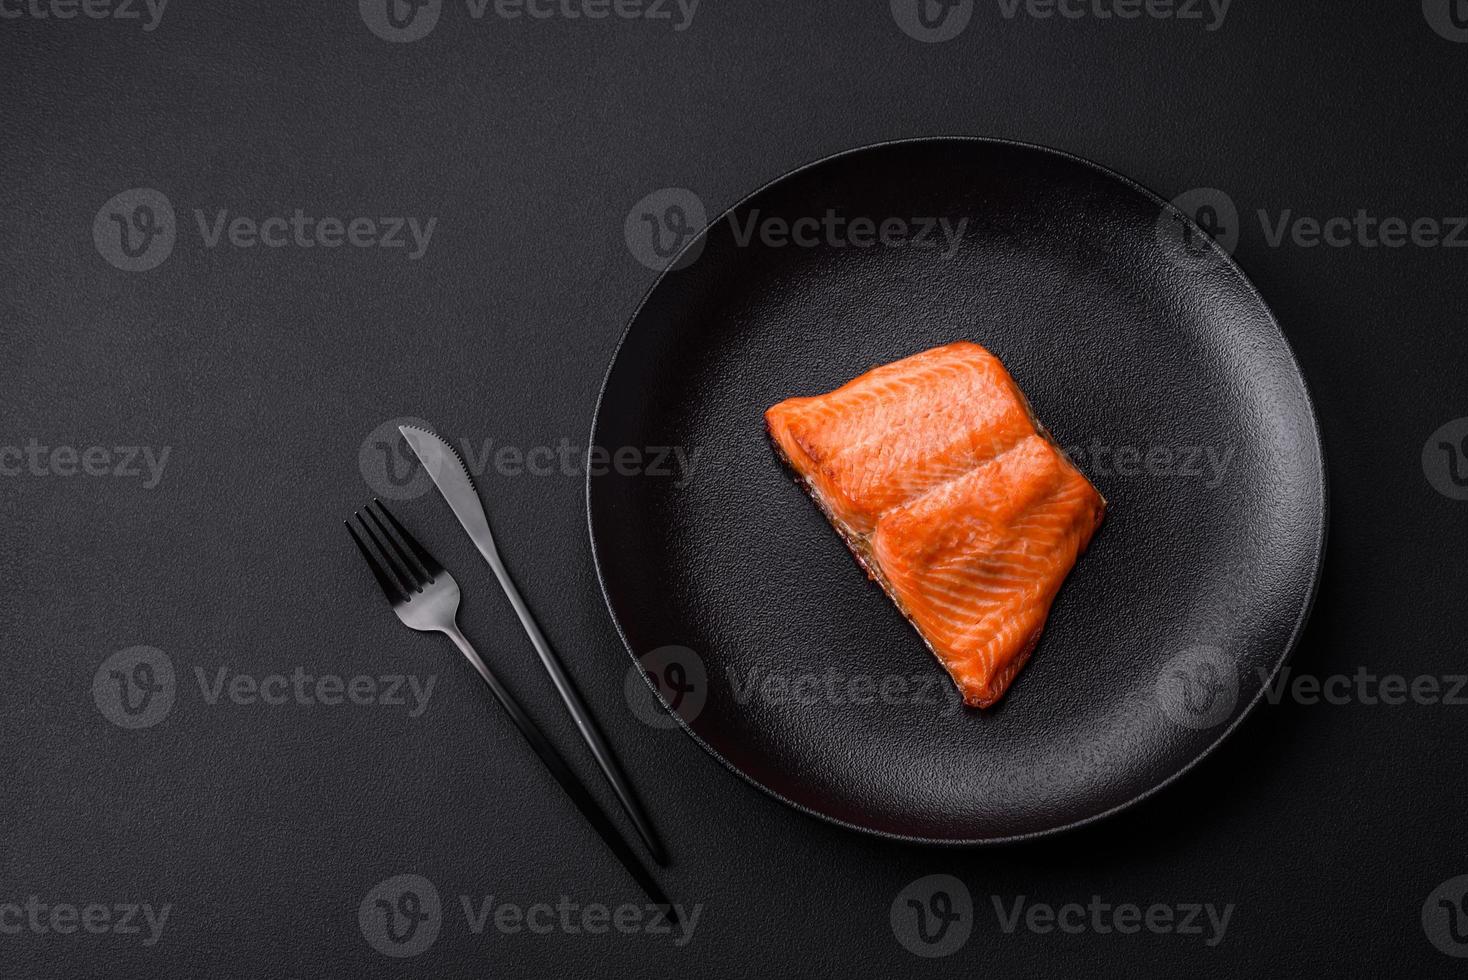 délicieux steak de poisson rouge au saumon cuit au four avec des épices et des herbes photo